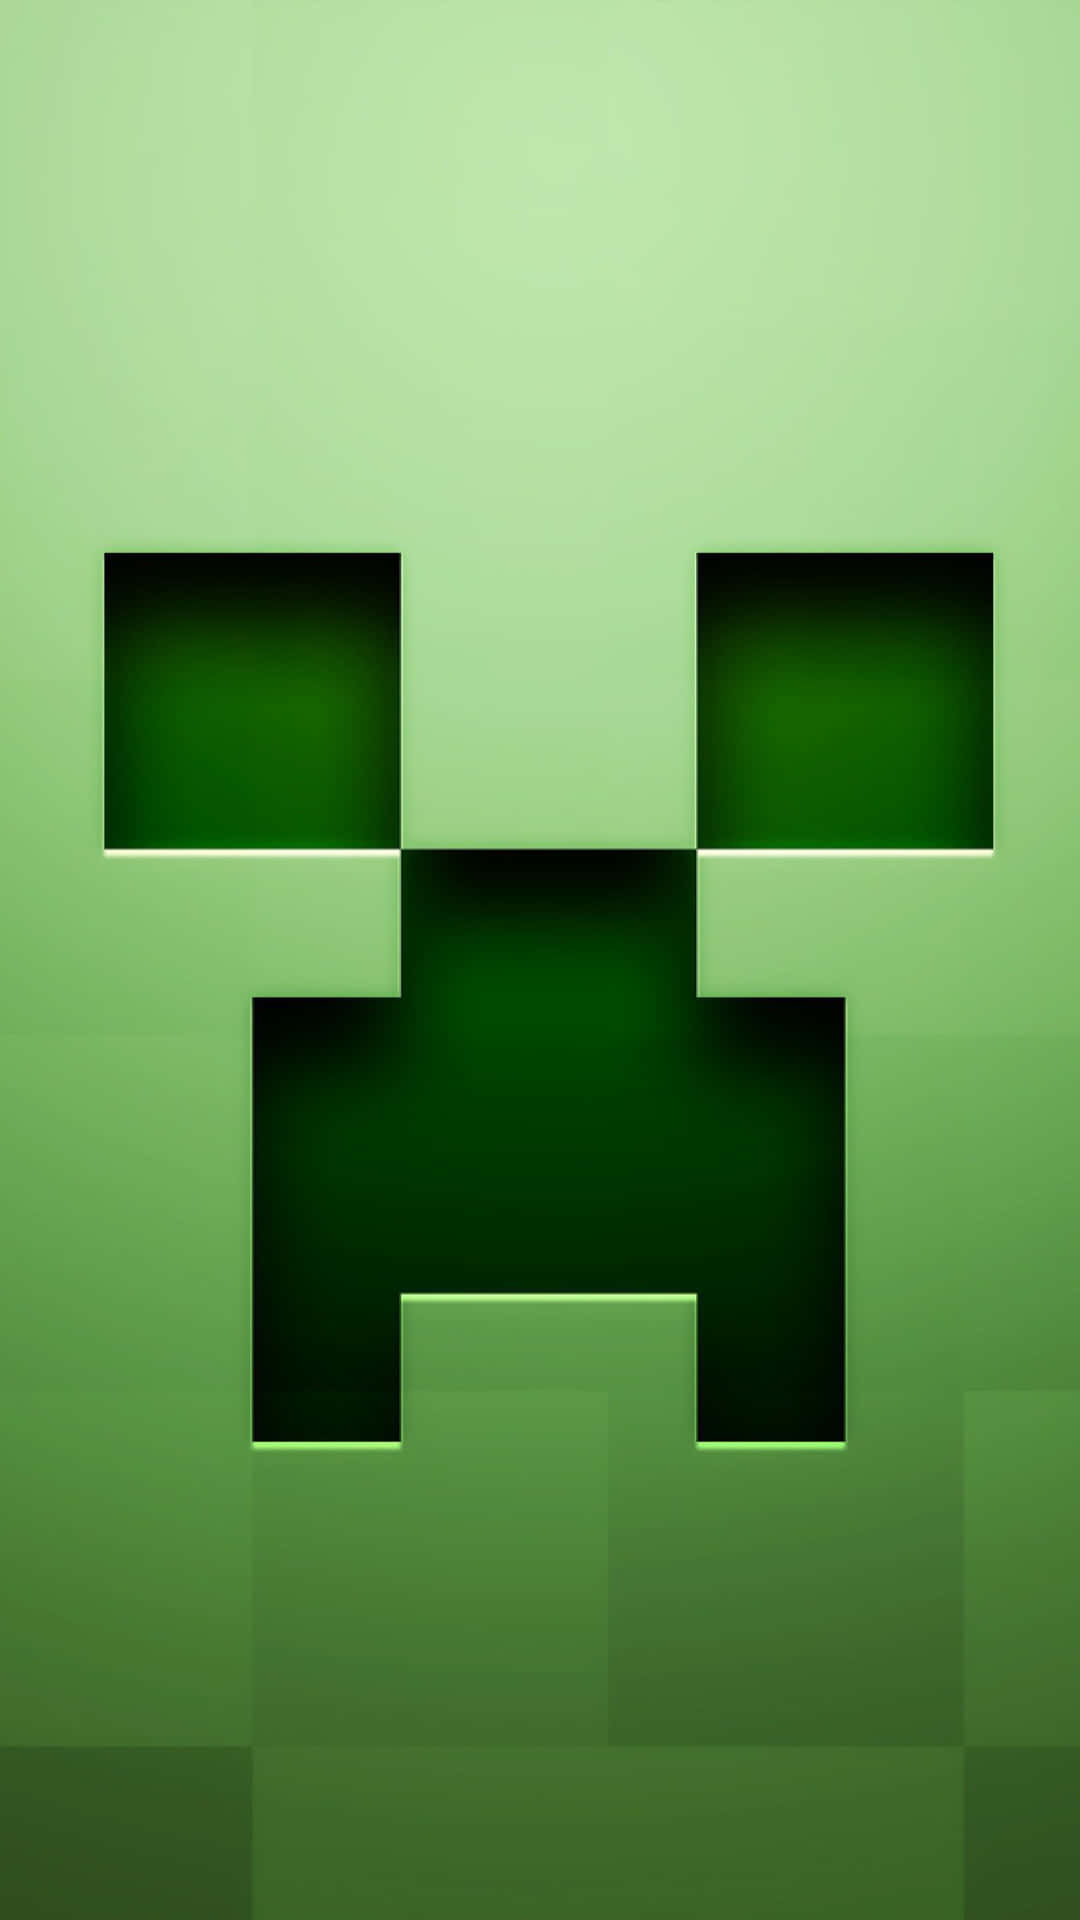 Fondode Pantalla De Minecraft Con Un Creeper Grabado En La Superficie Del Google Pixel 3.